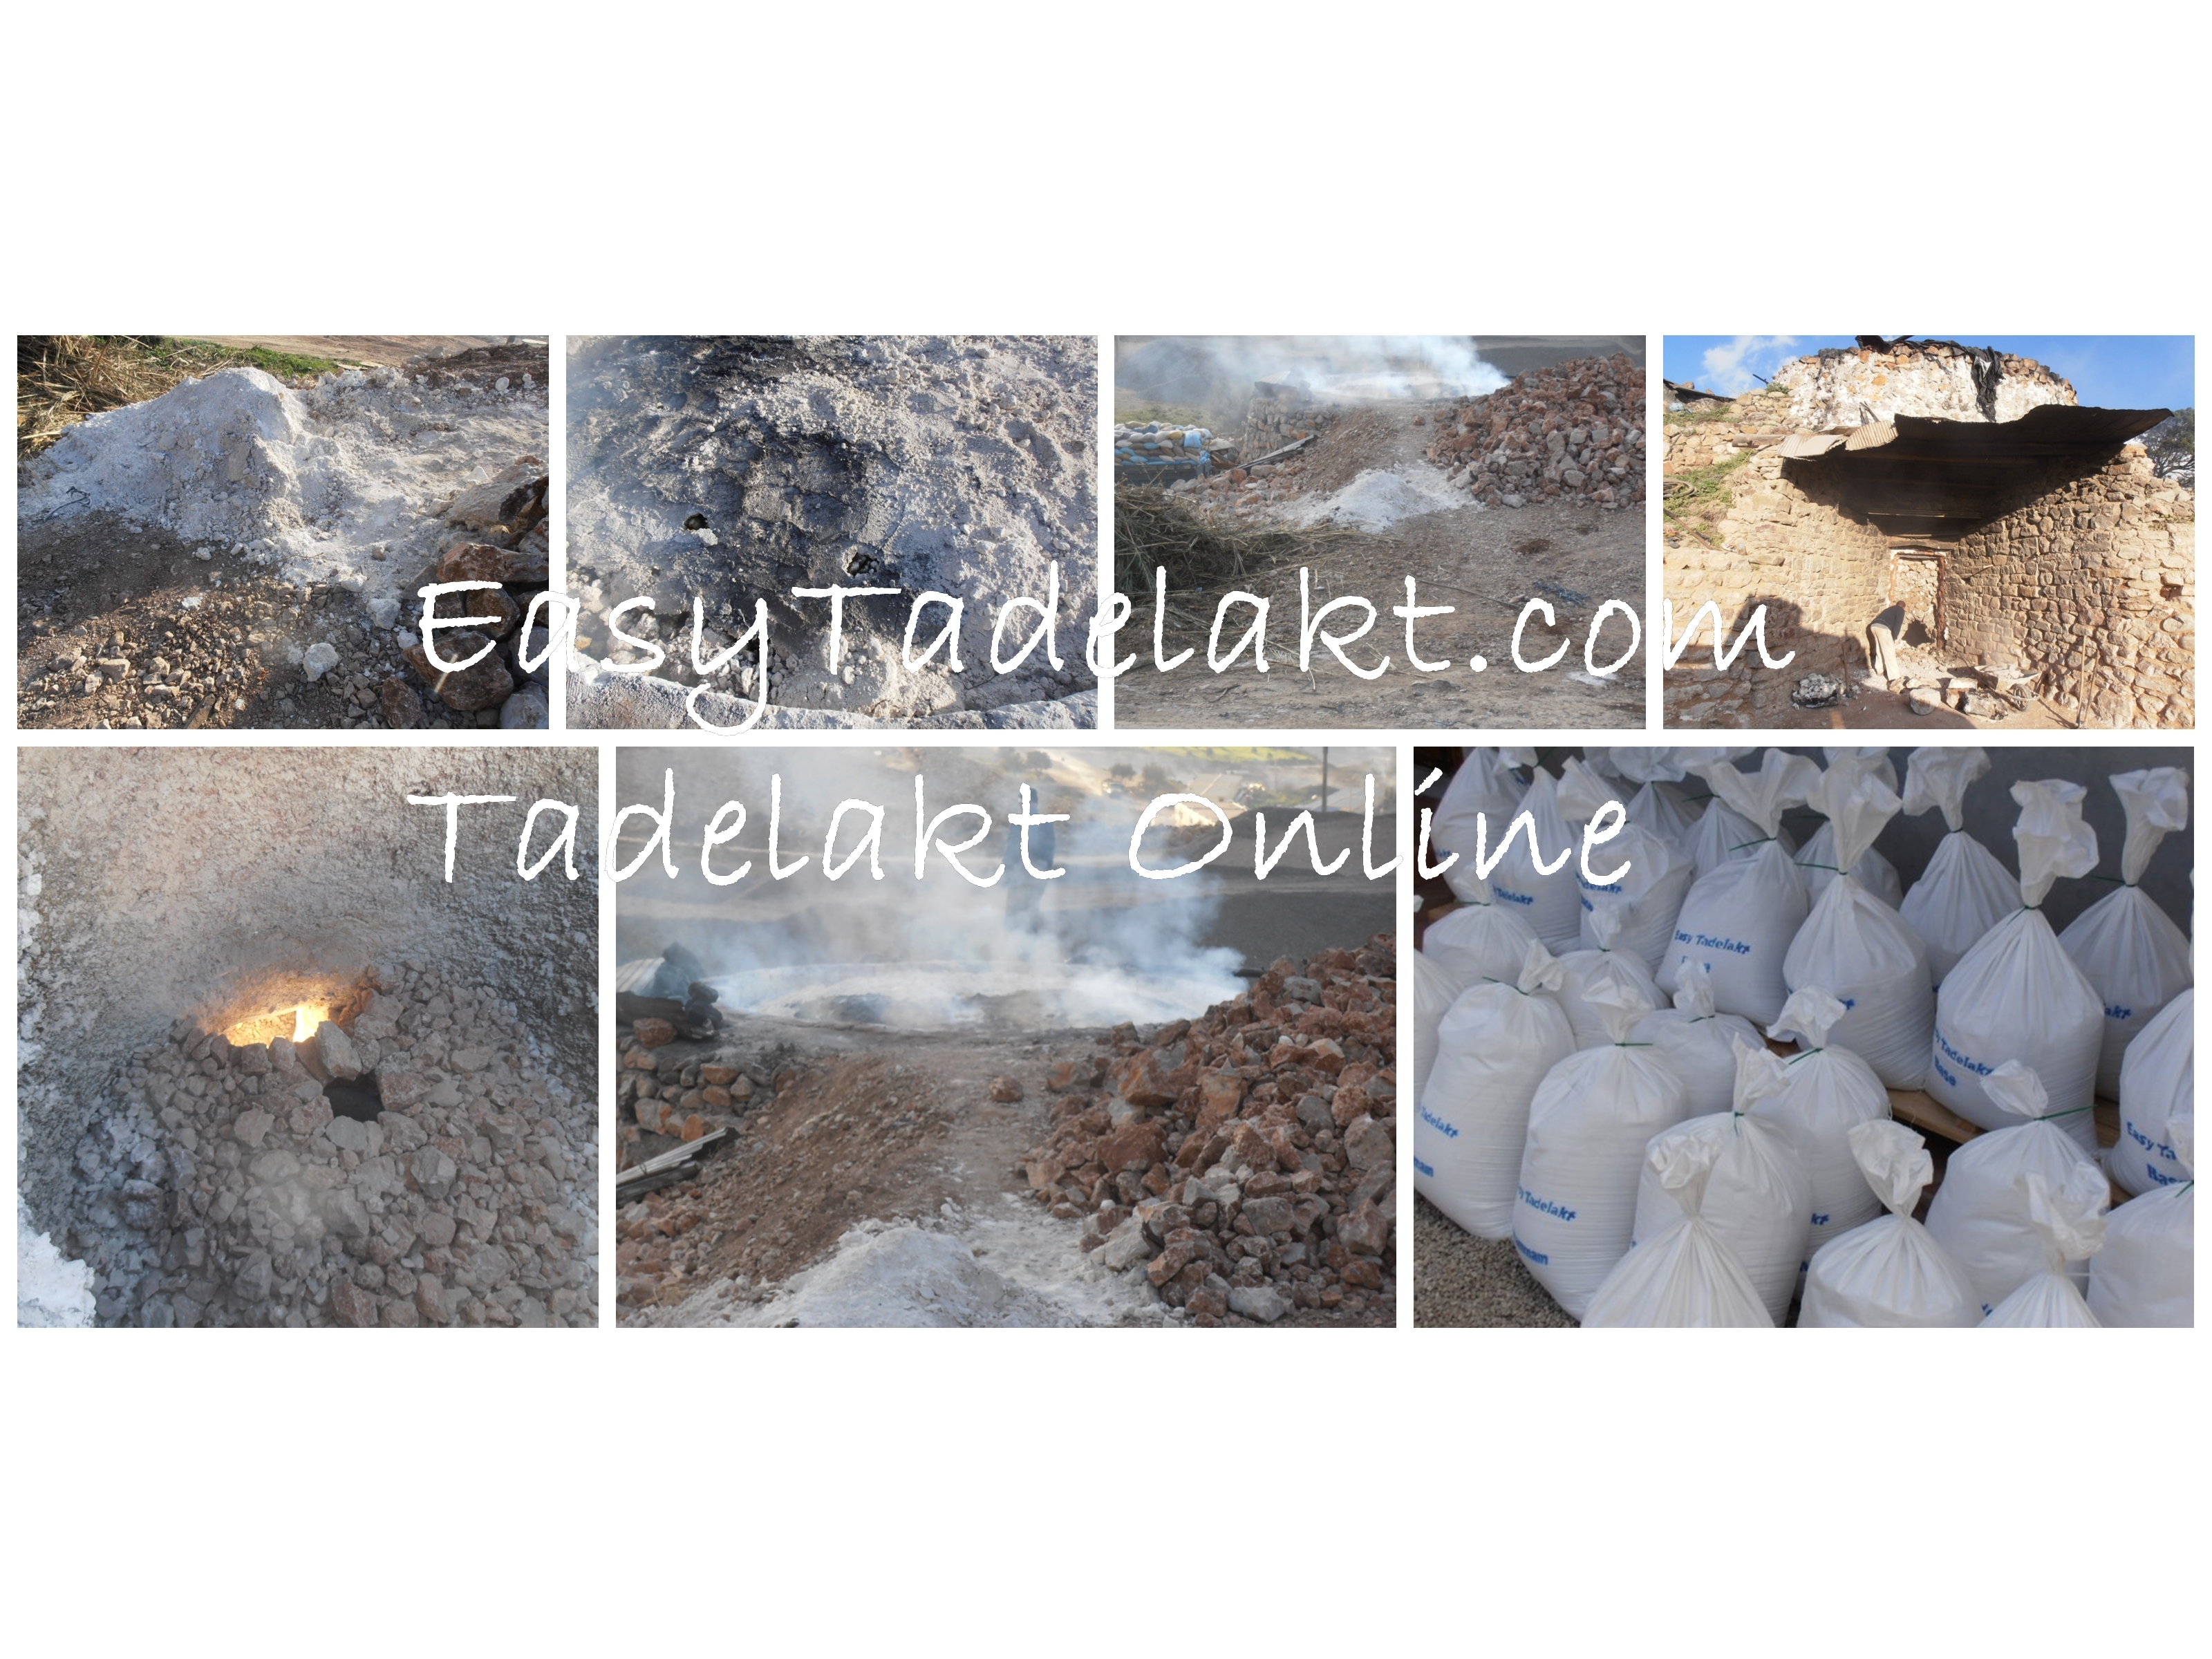 EasyTadelakt, the making of tadelakt, tadelakt manufacturing and production. The making of Tadelakt in Morocco by EasyTadelakt